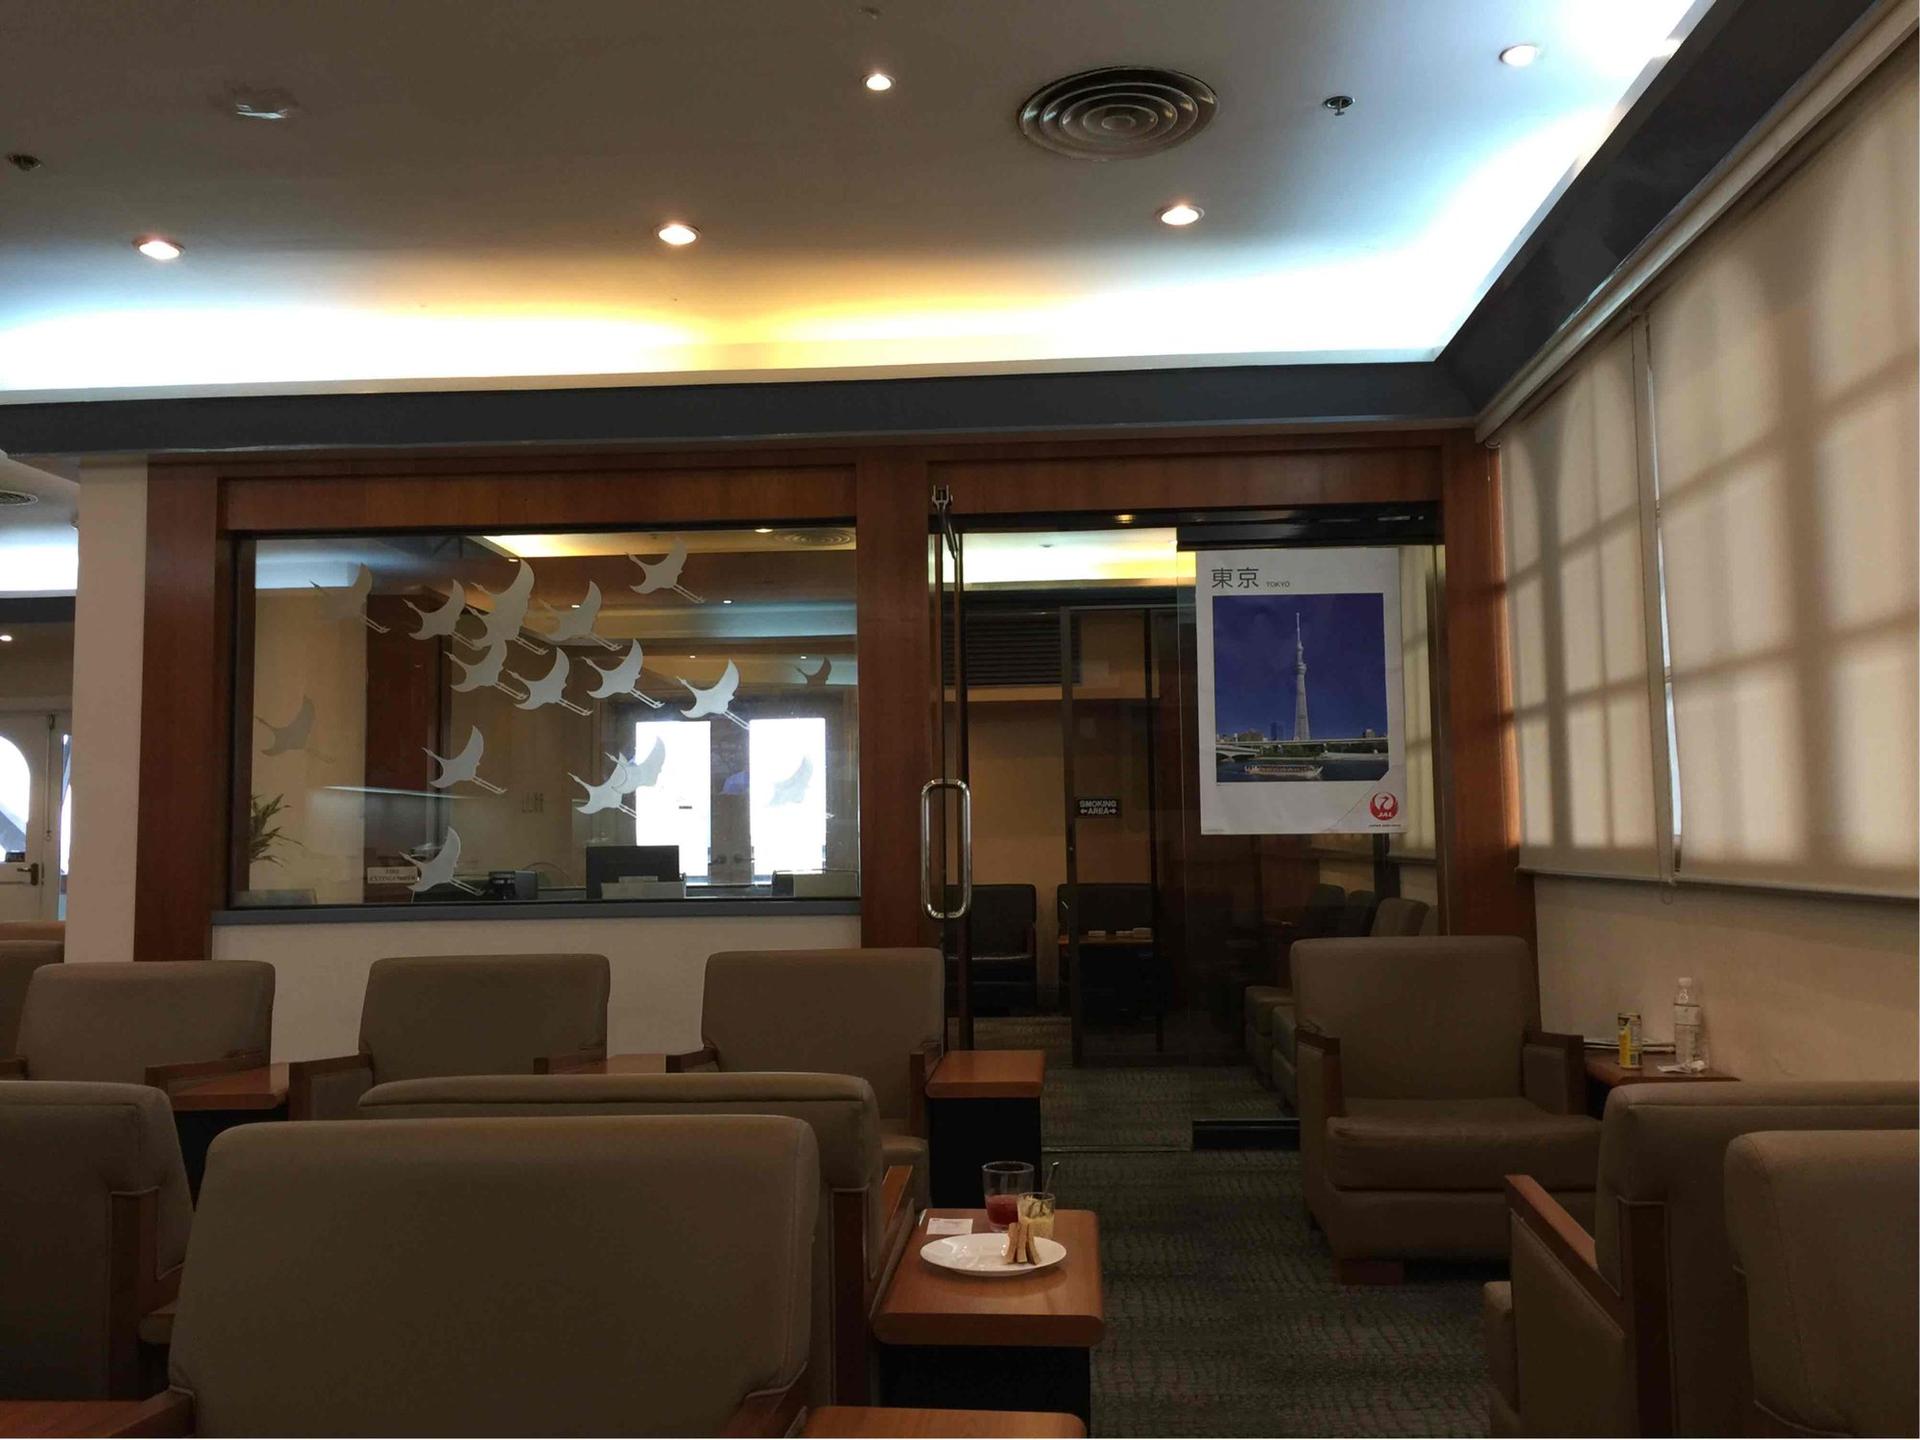 Japan Airlines JAL Sakura Lounge image 3 of 8